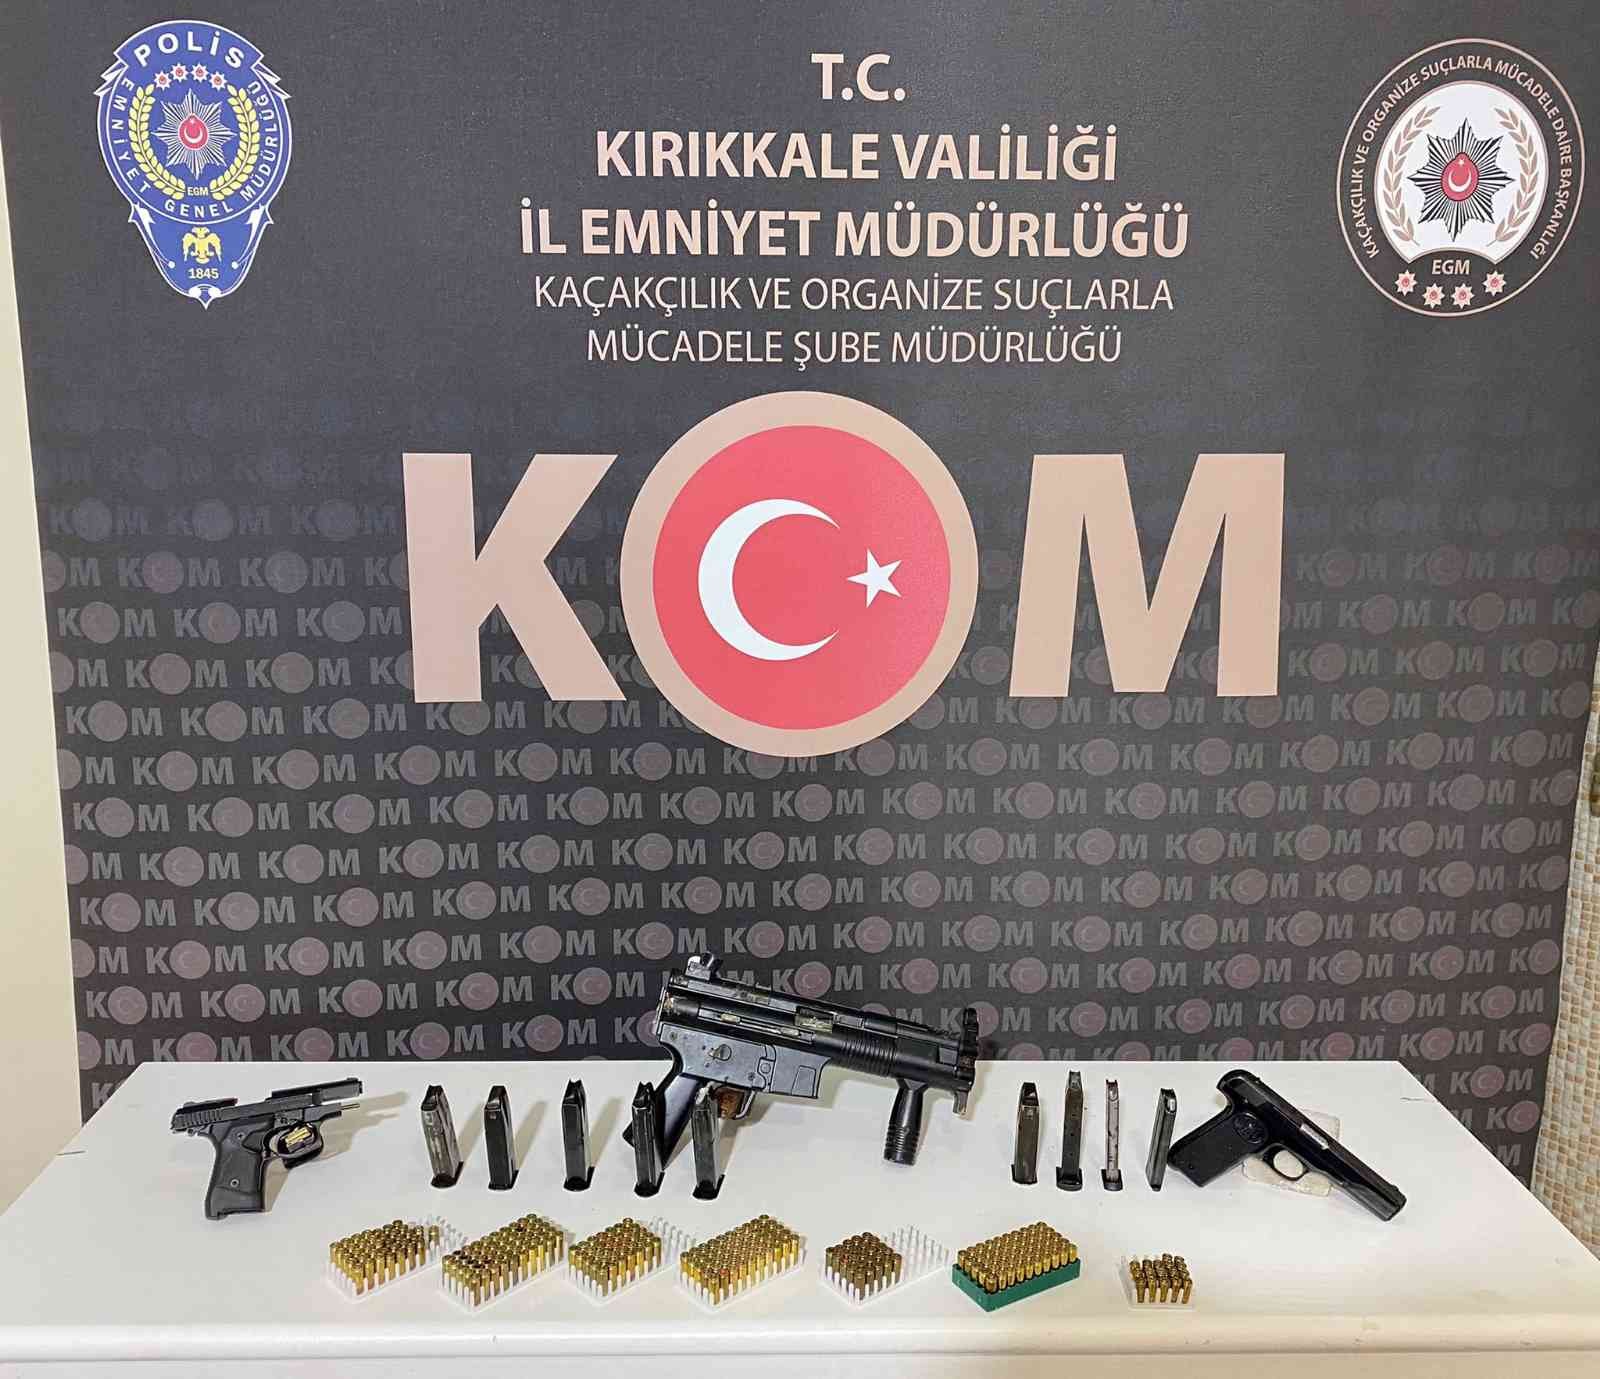 Kırıkkale’de polisin operasyon düzenlediği evden 3 adet ruhsatsız tabanca çıktı: 1 gözaltı #kirikkale